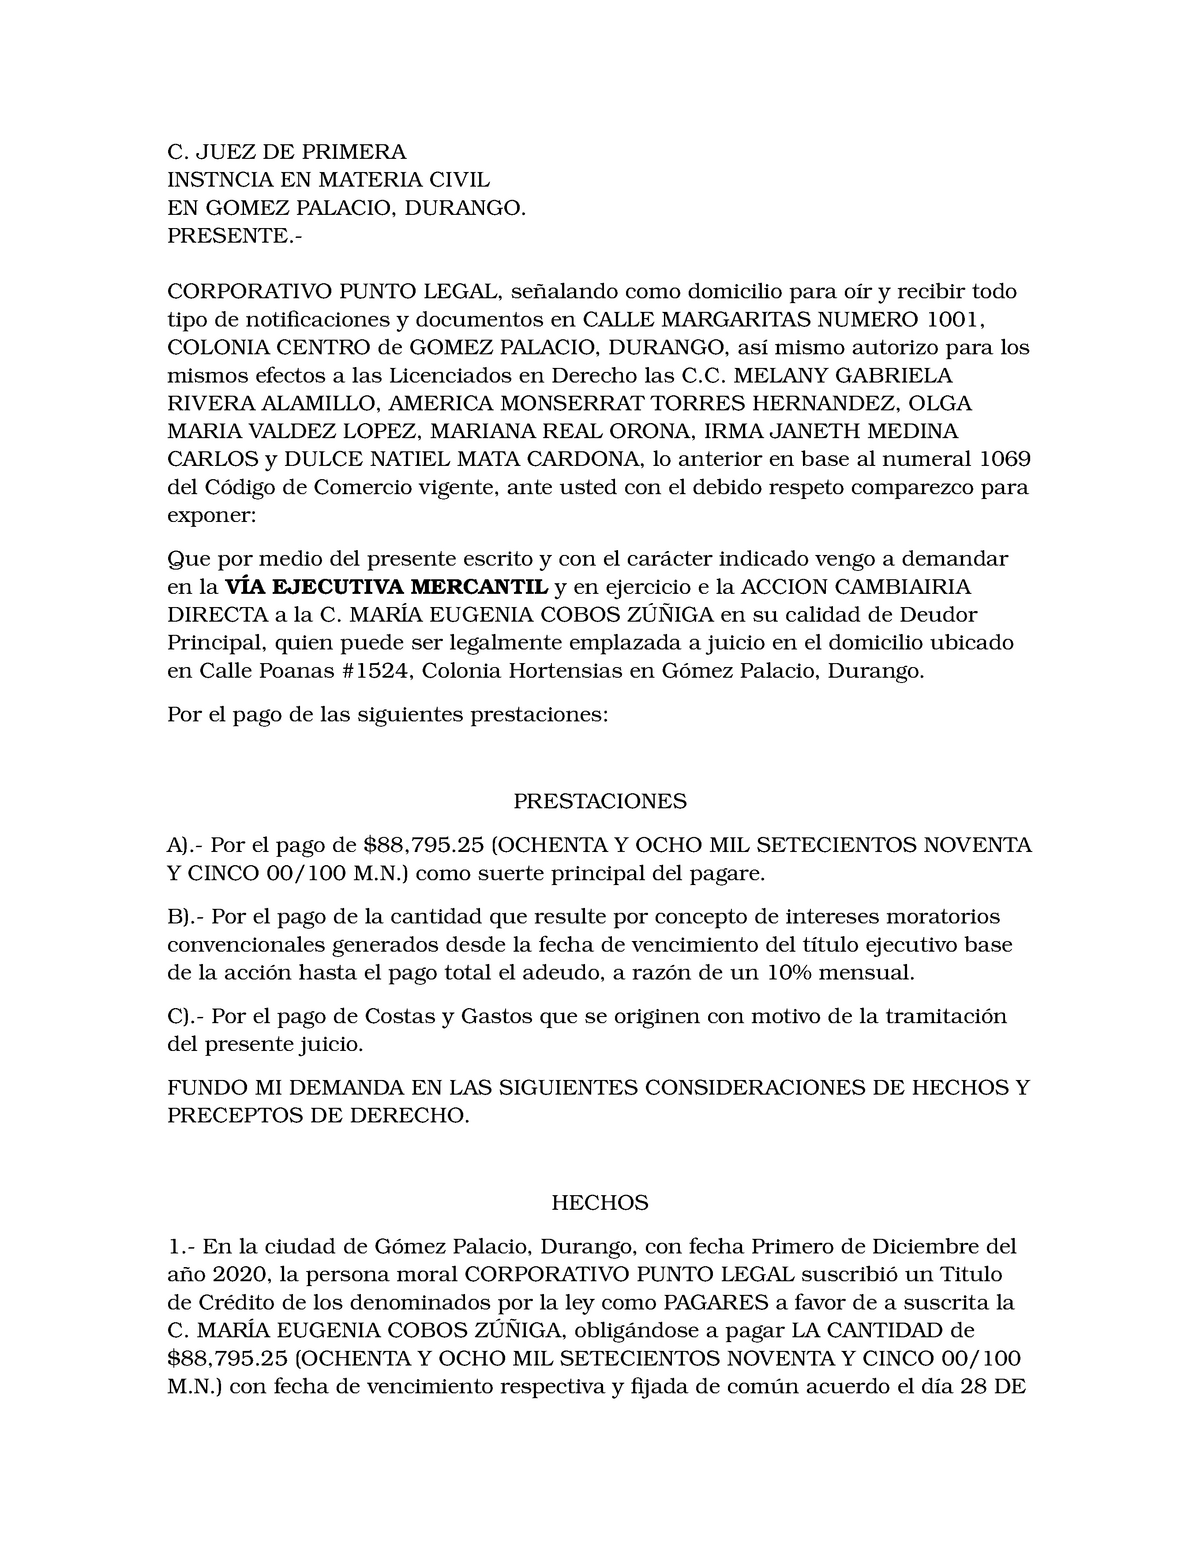 Demanda de juicio ejecutivo mercantil pagare - C. JUEZ DE PRIMERA ...